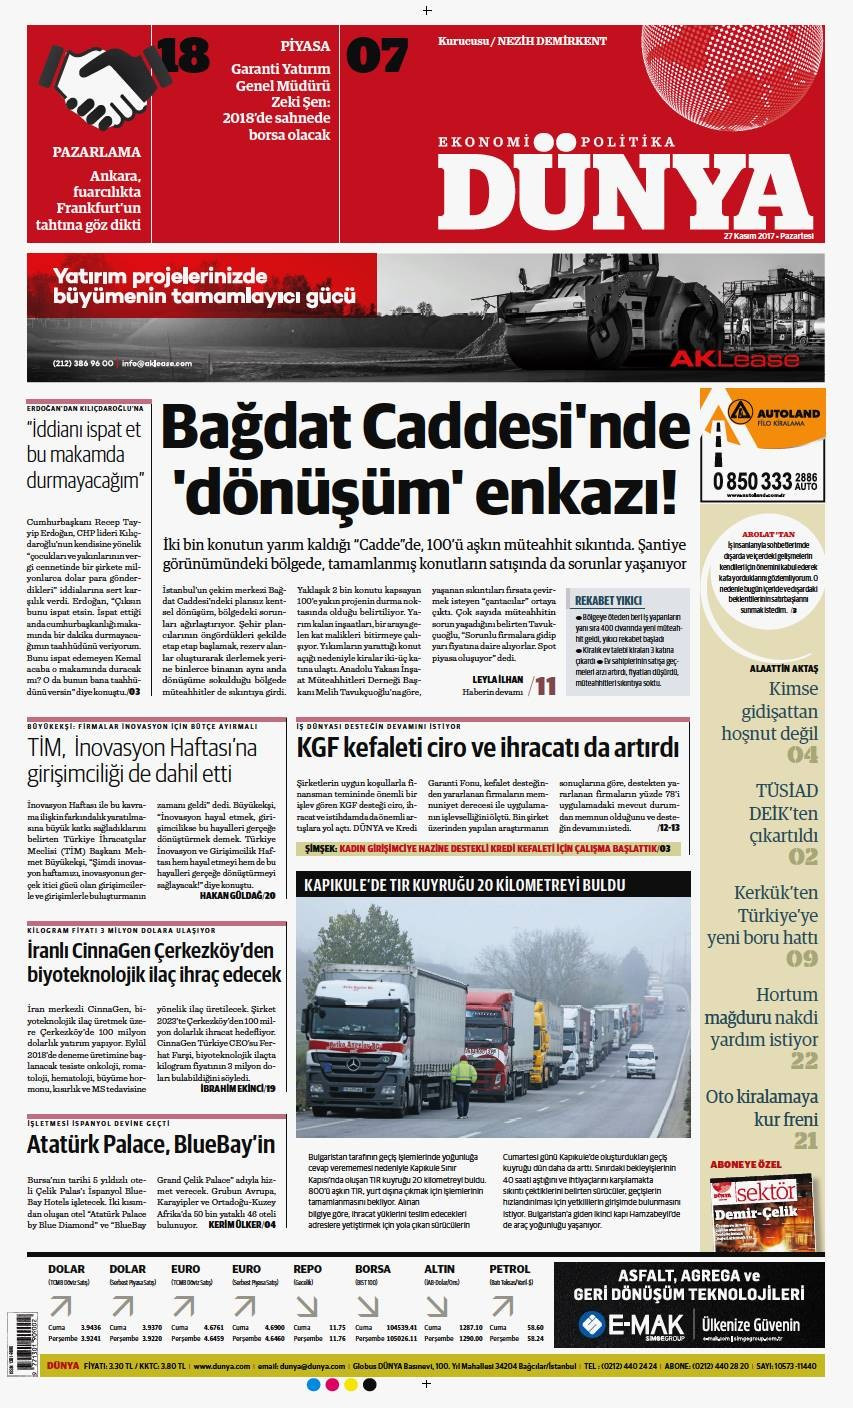 Günün gazete manşetleri (27 Kasım 2017) - Sayfa 1